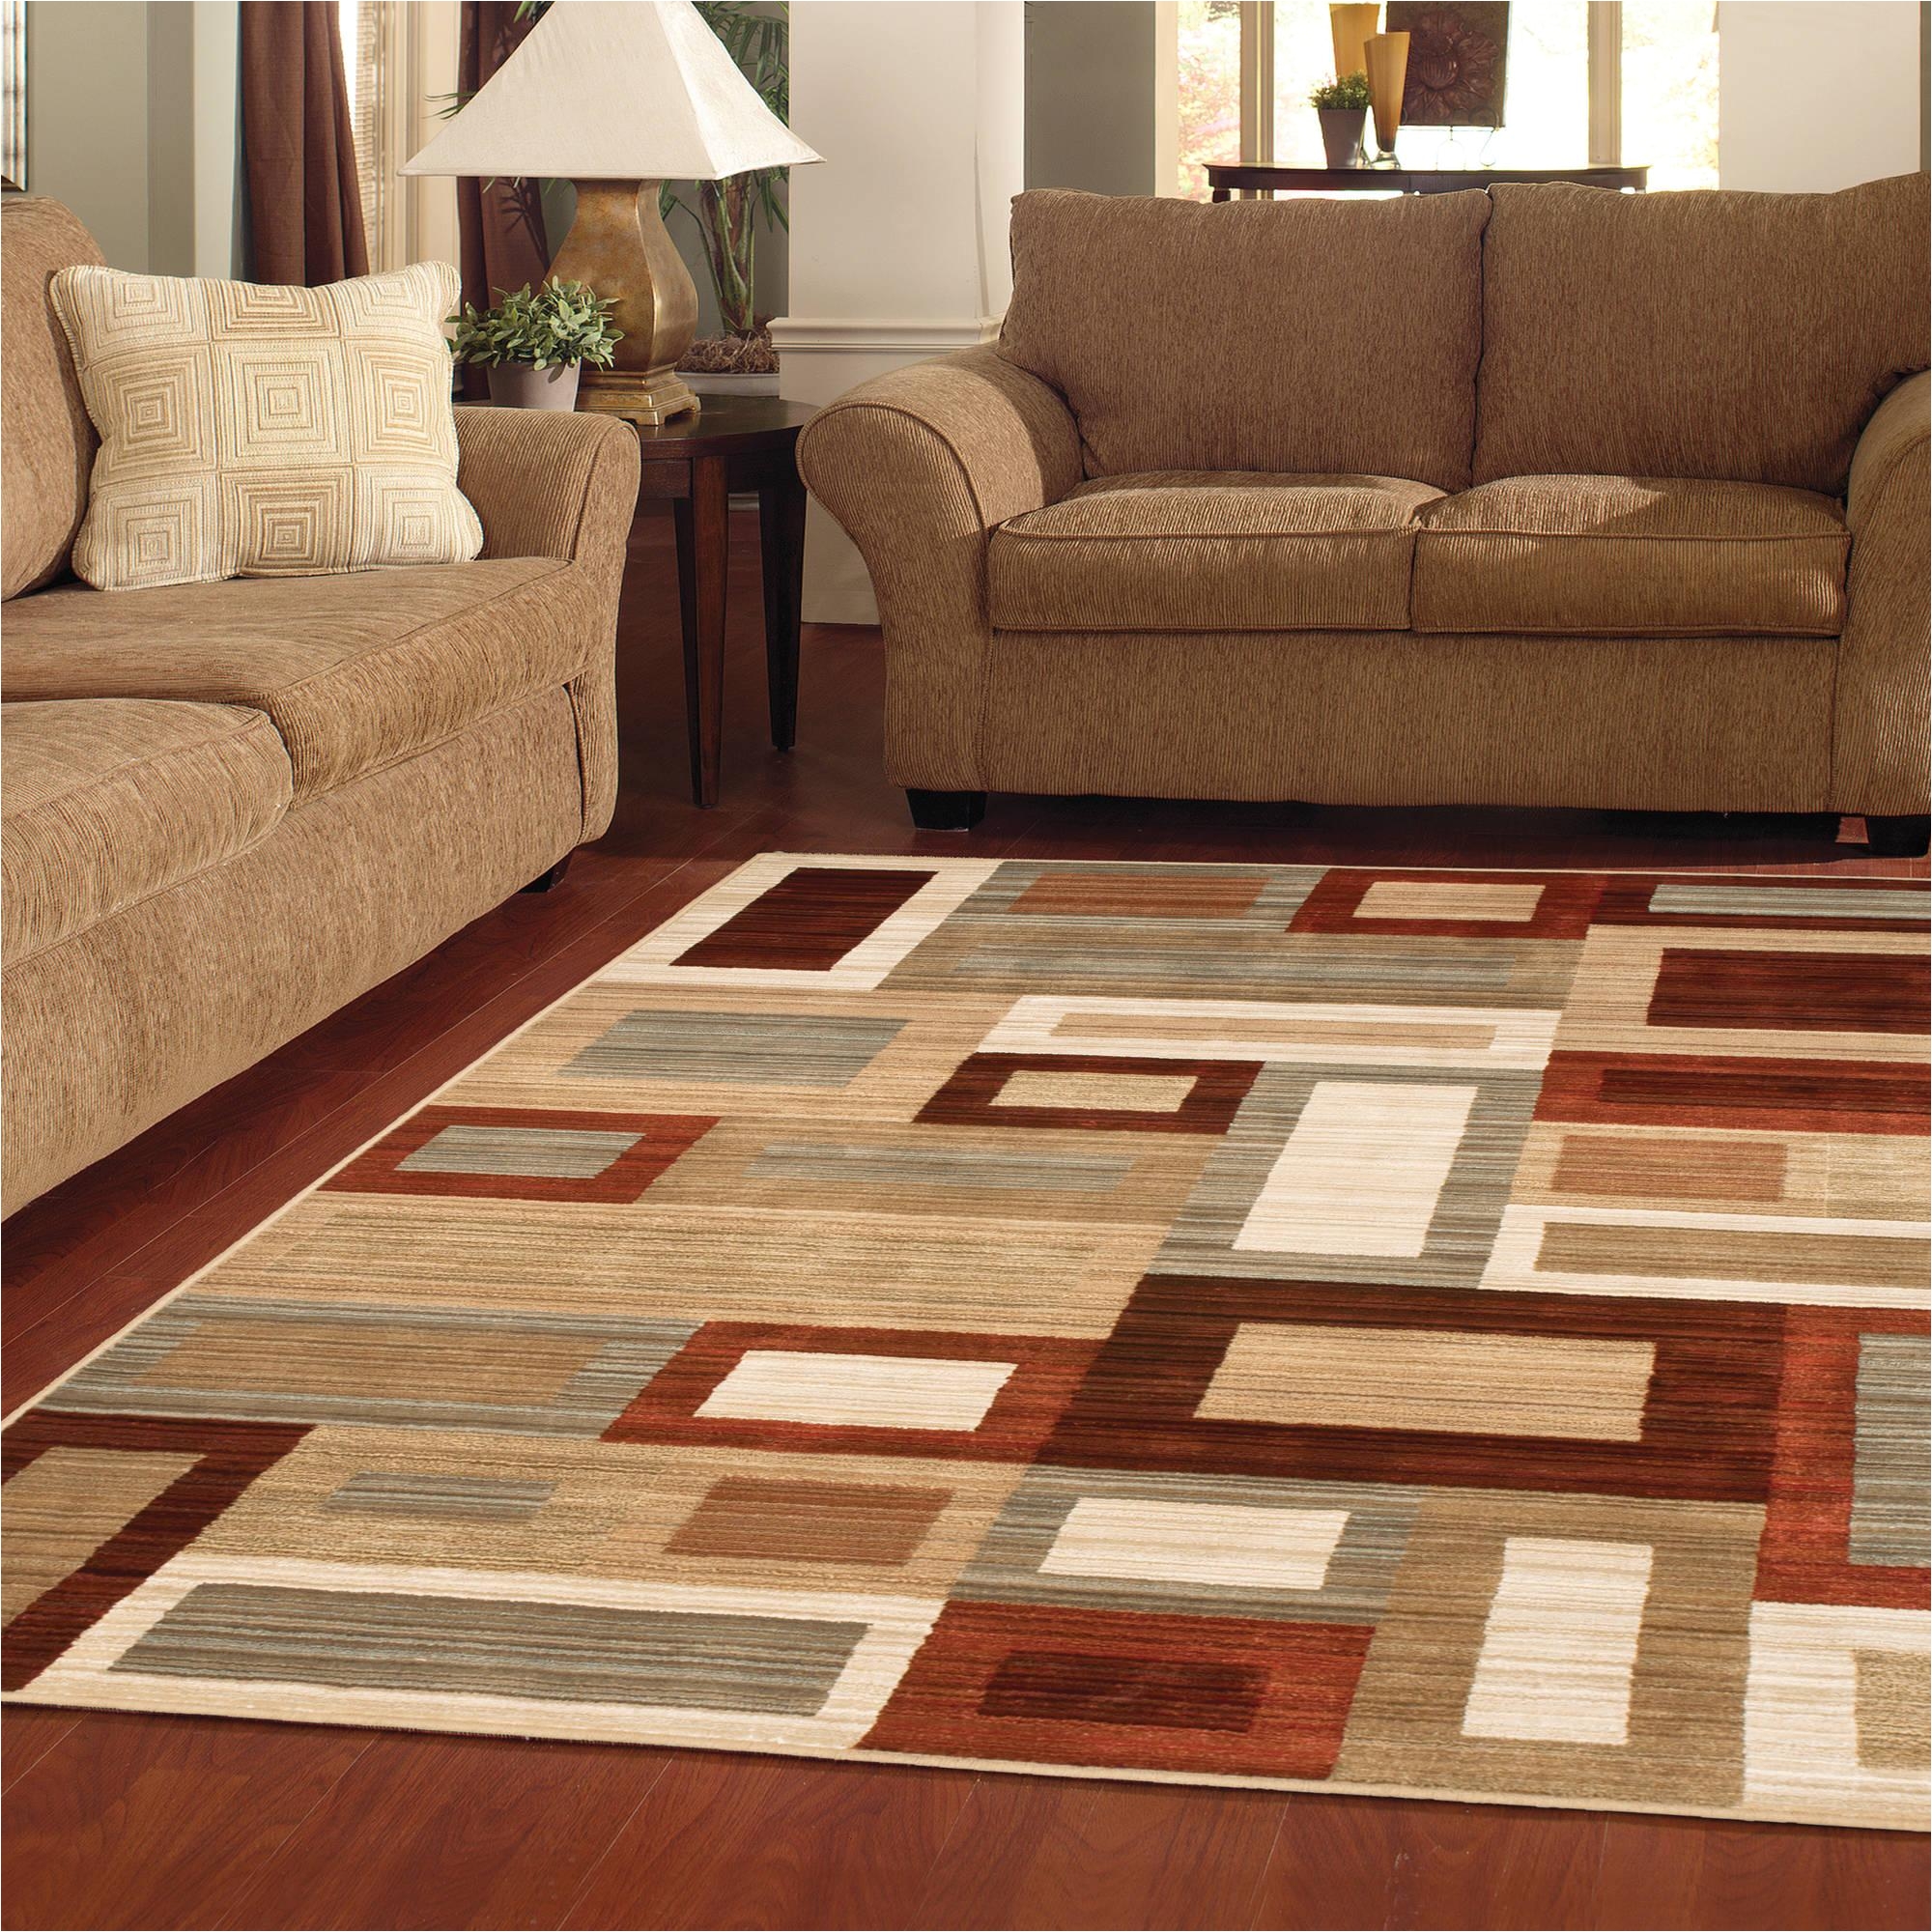 8 10 area rugs rug ideas